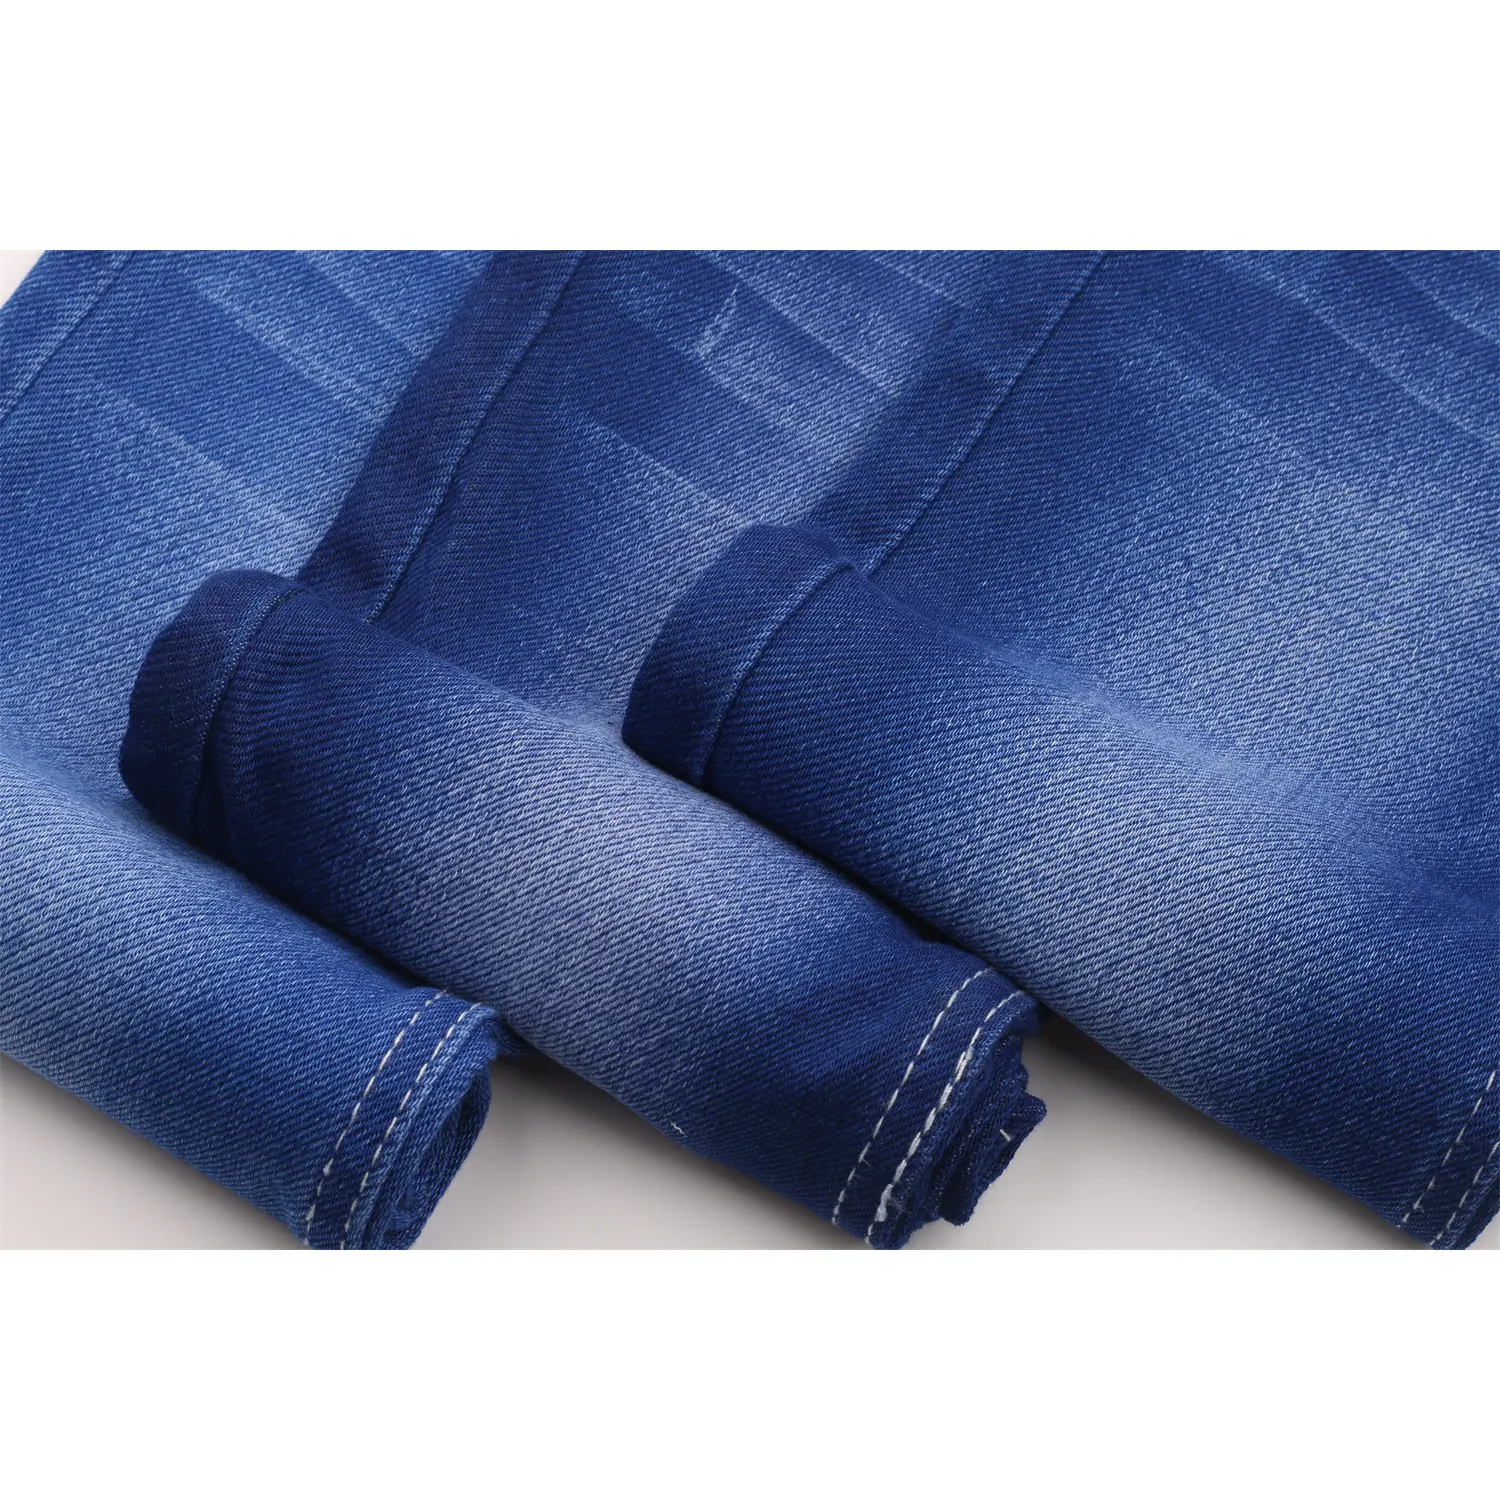 10 унций стрейч саржа высокого качества стрейч джинсовая ткань в наличии хлопок спандекс полиэстер